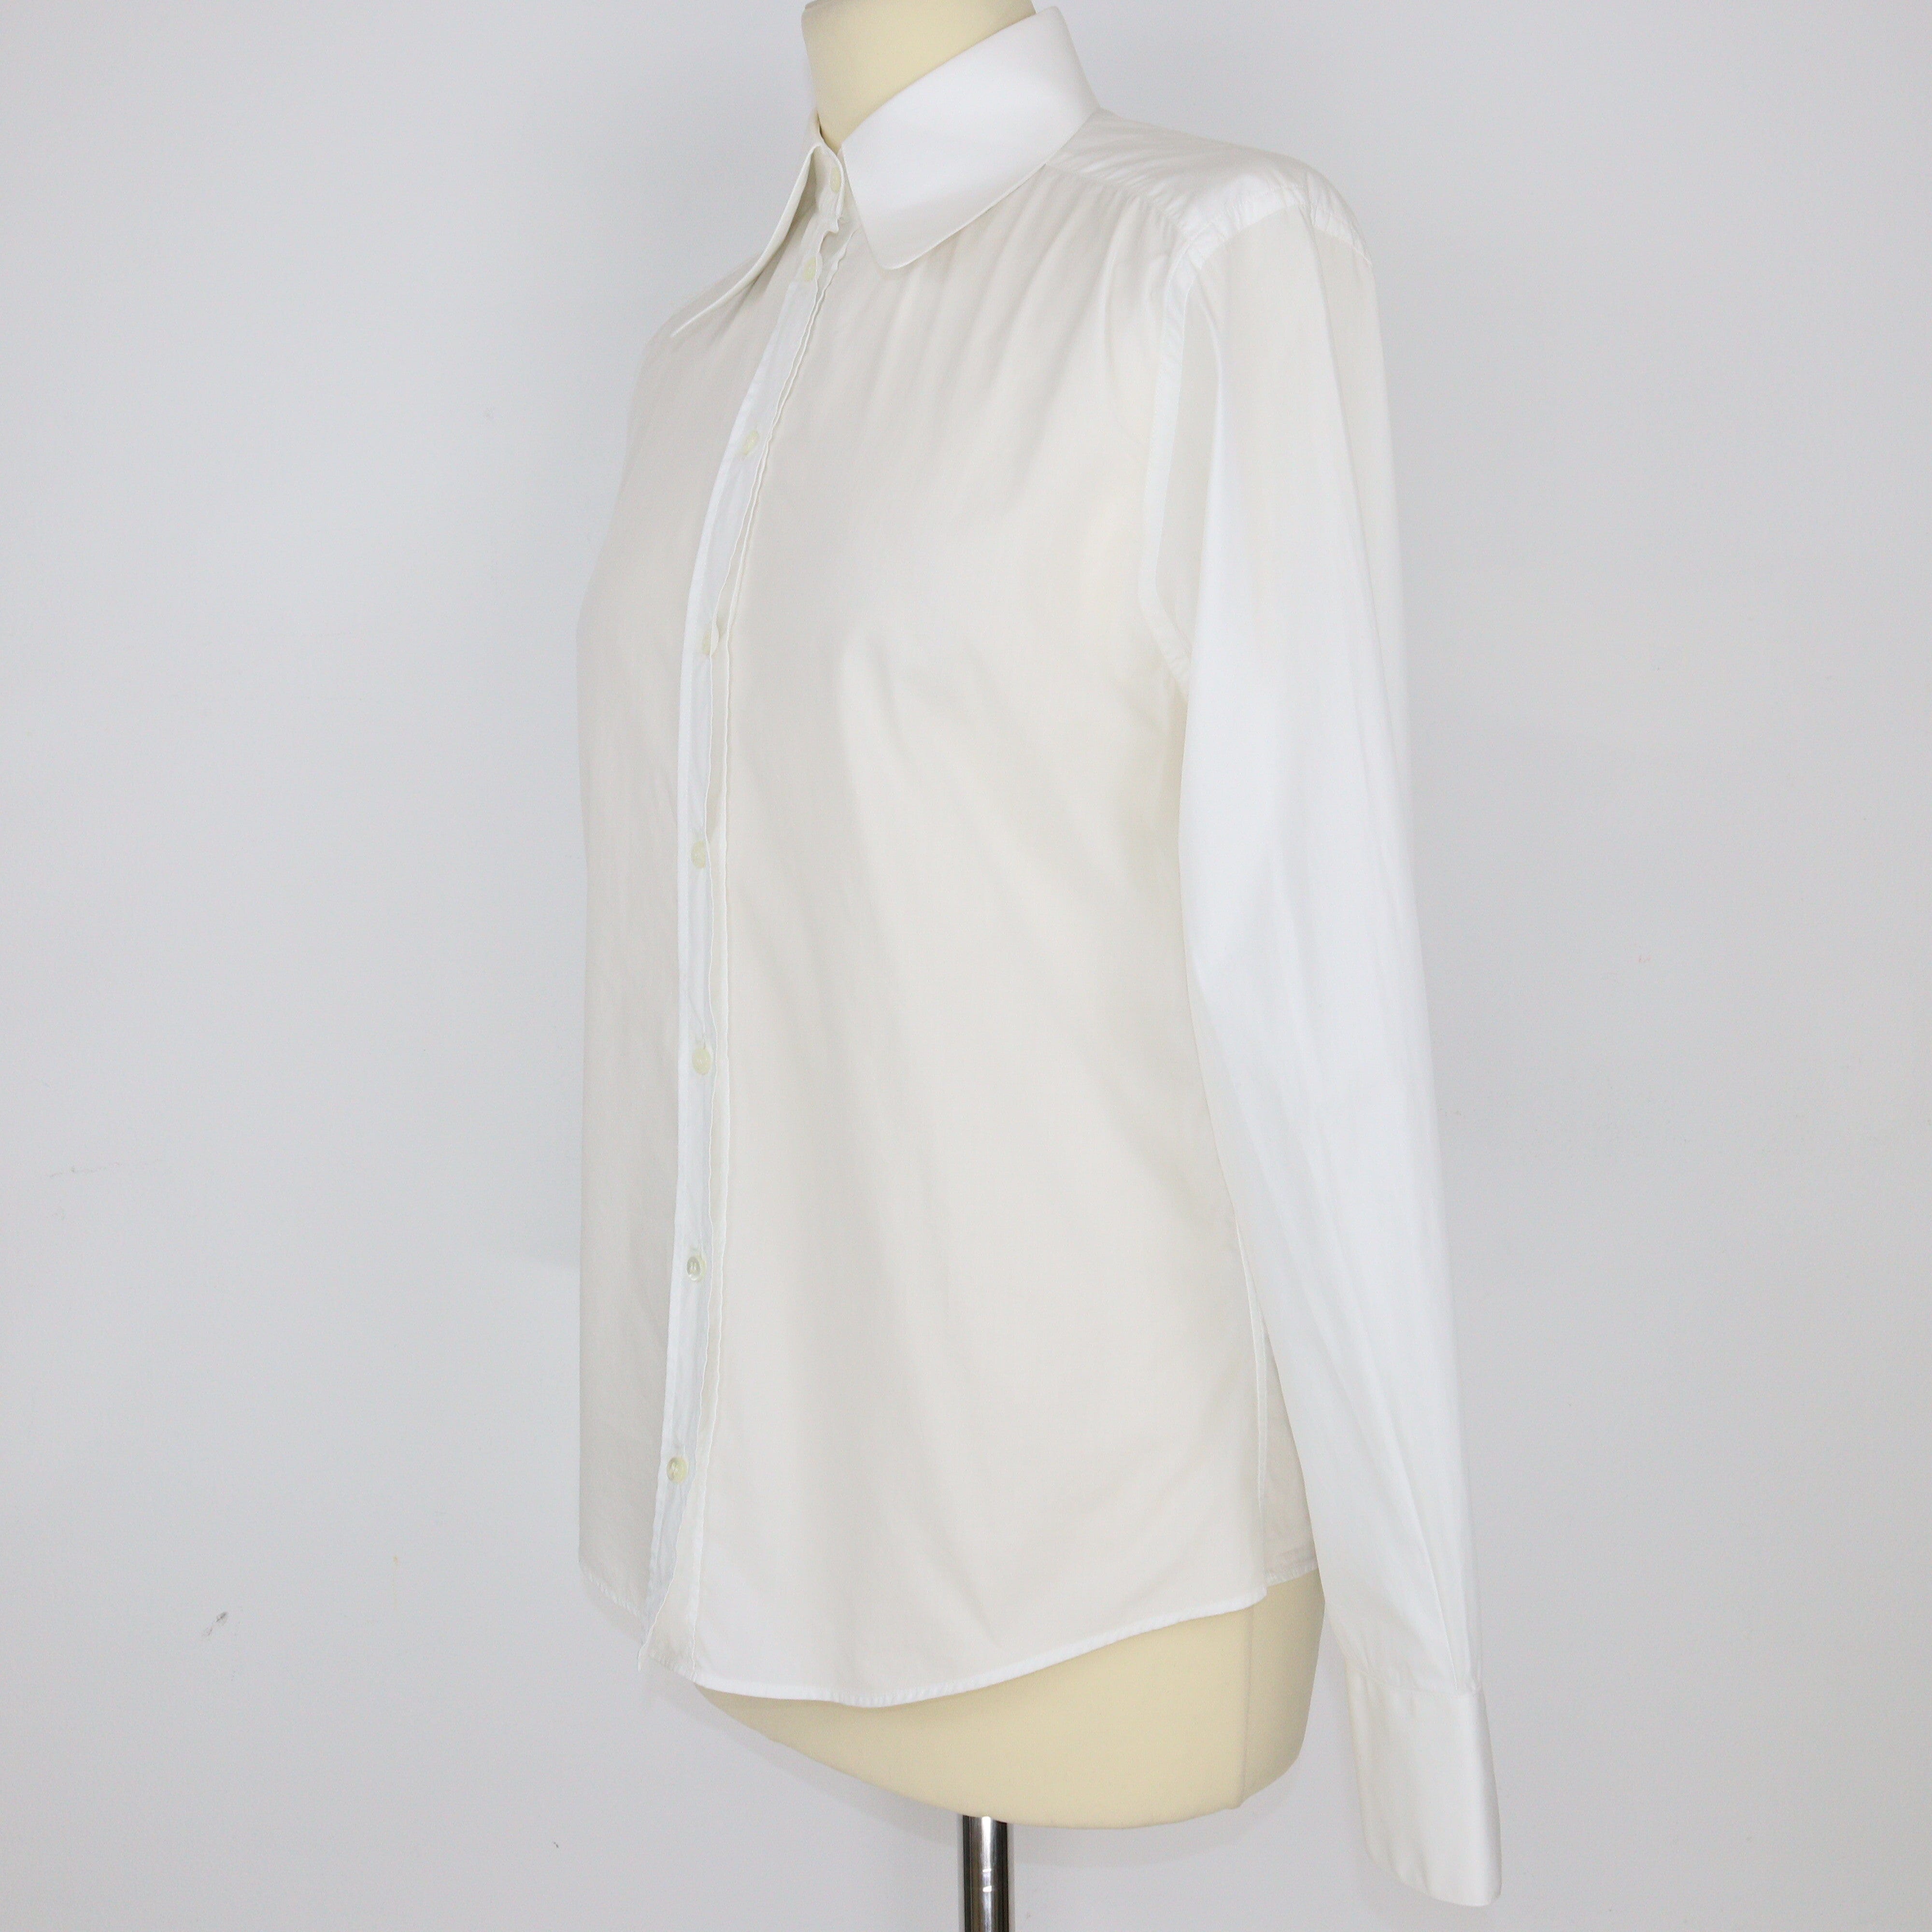 White Long Sleeve Shirt Clothing Dolce & Gabbana 